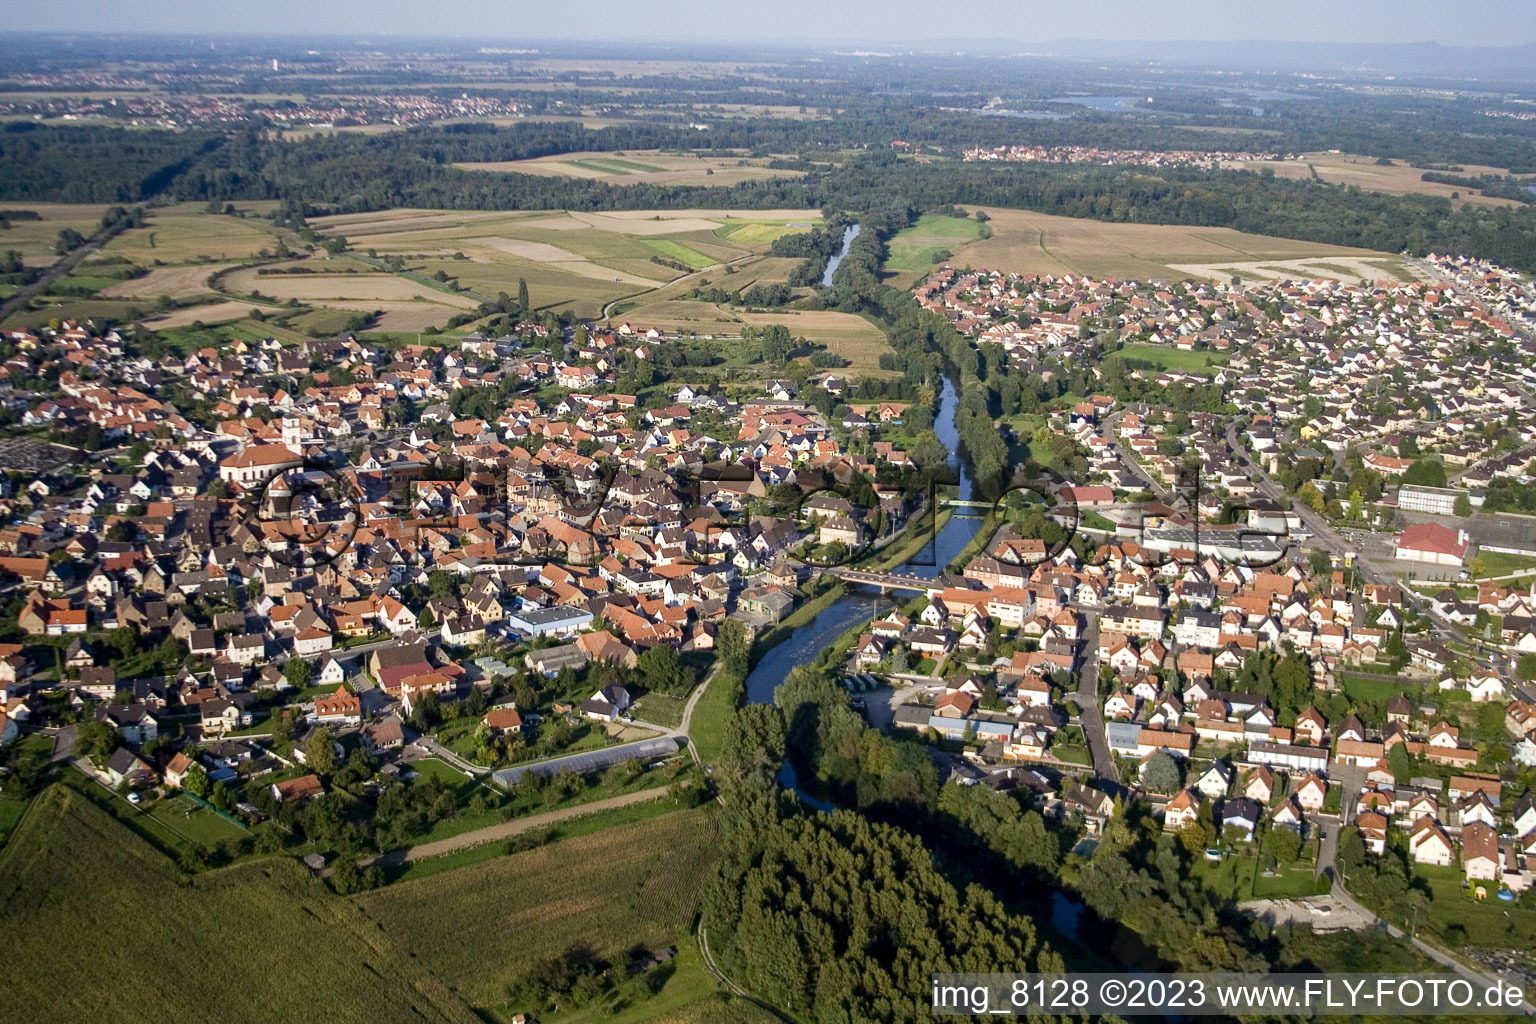 Drusenheim im Bundesland Bas-Rhin, Frankreich aus der Luft betrachtet